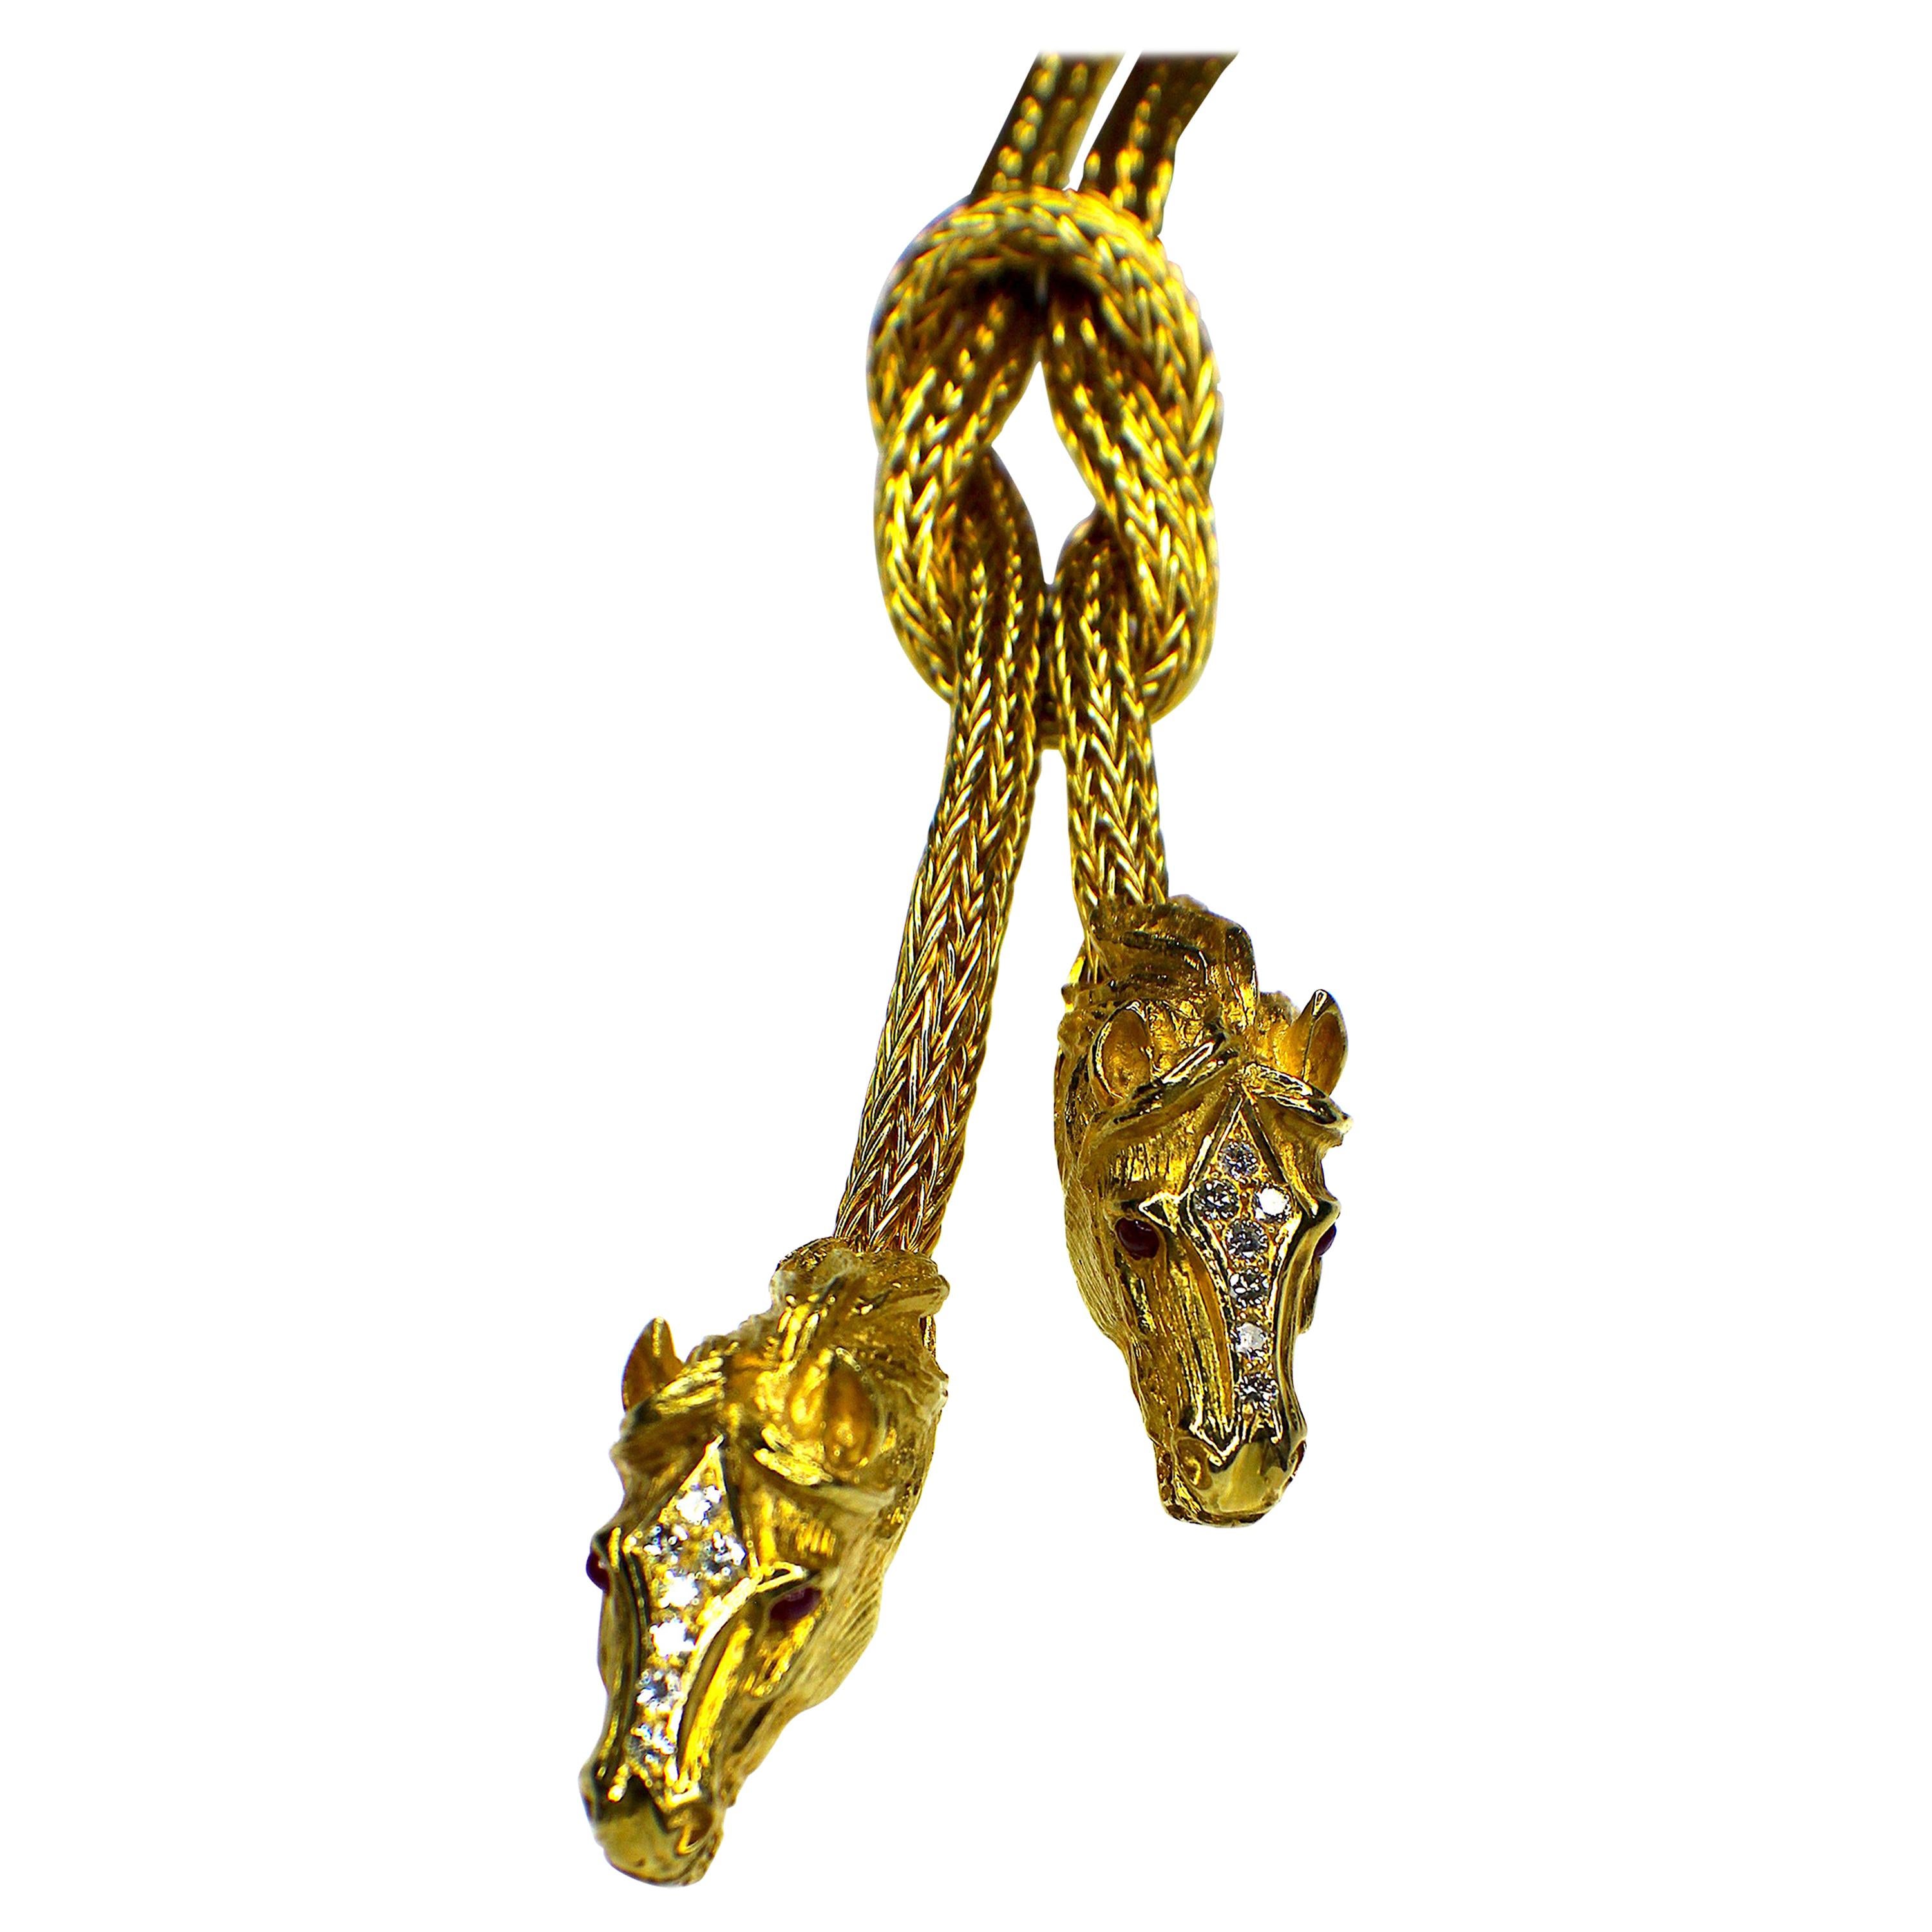 GEMOLITHOS Necklace "Horses" Handcrafted 18 Karat Gold, 1980s